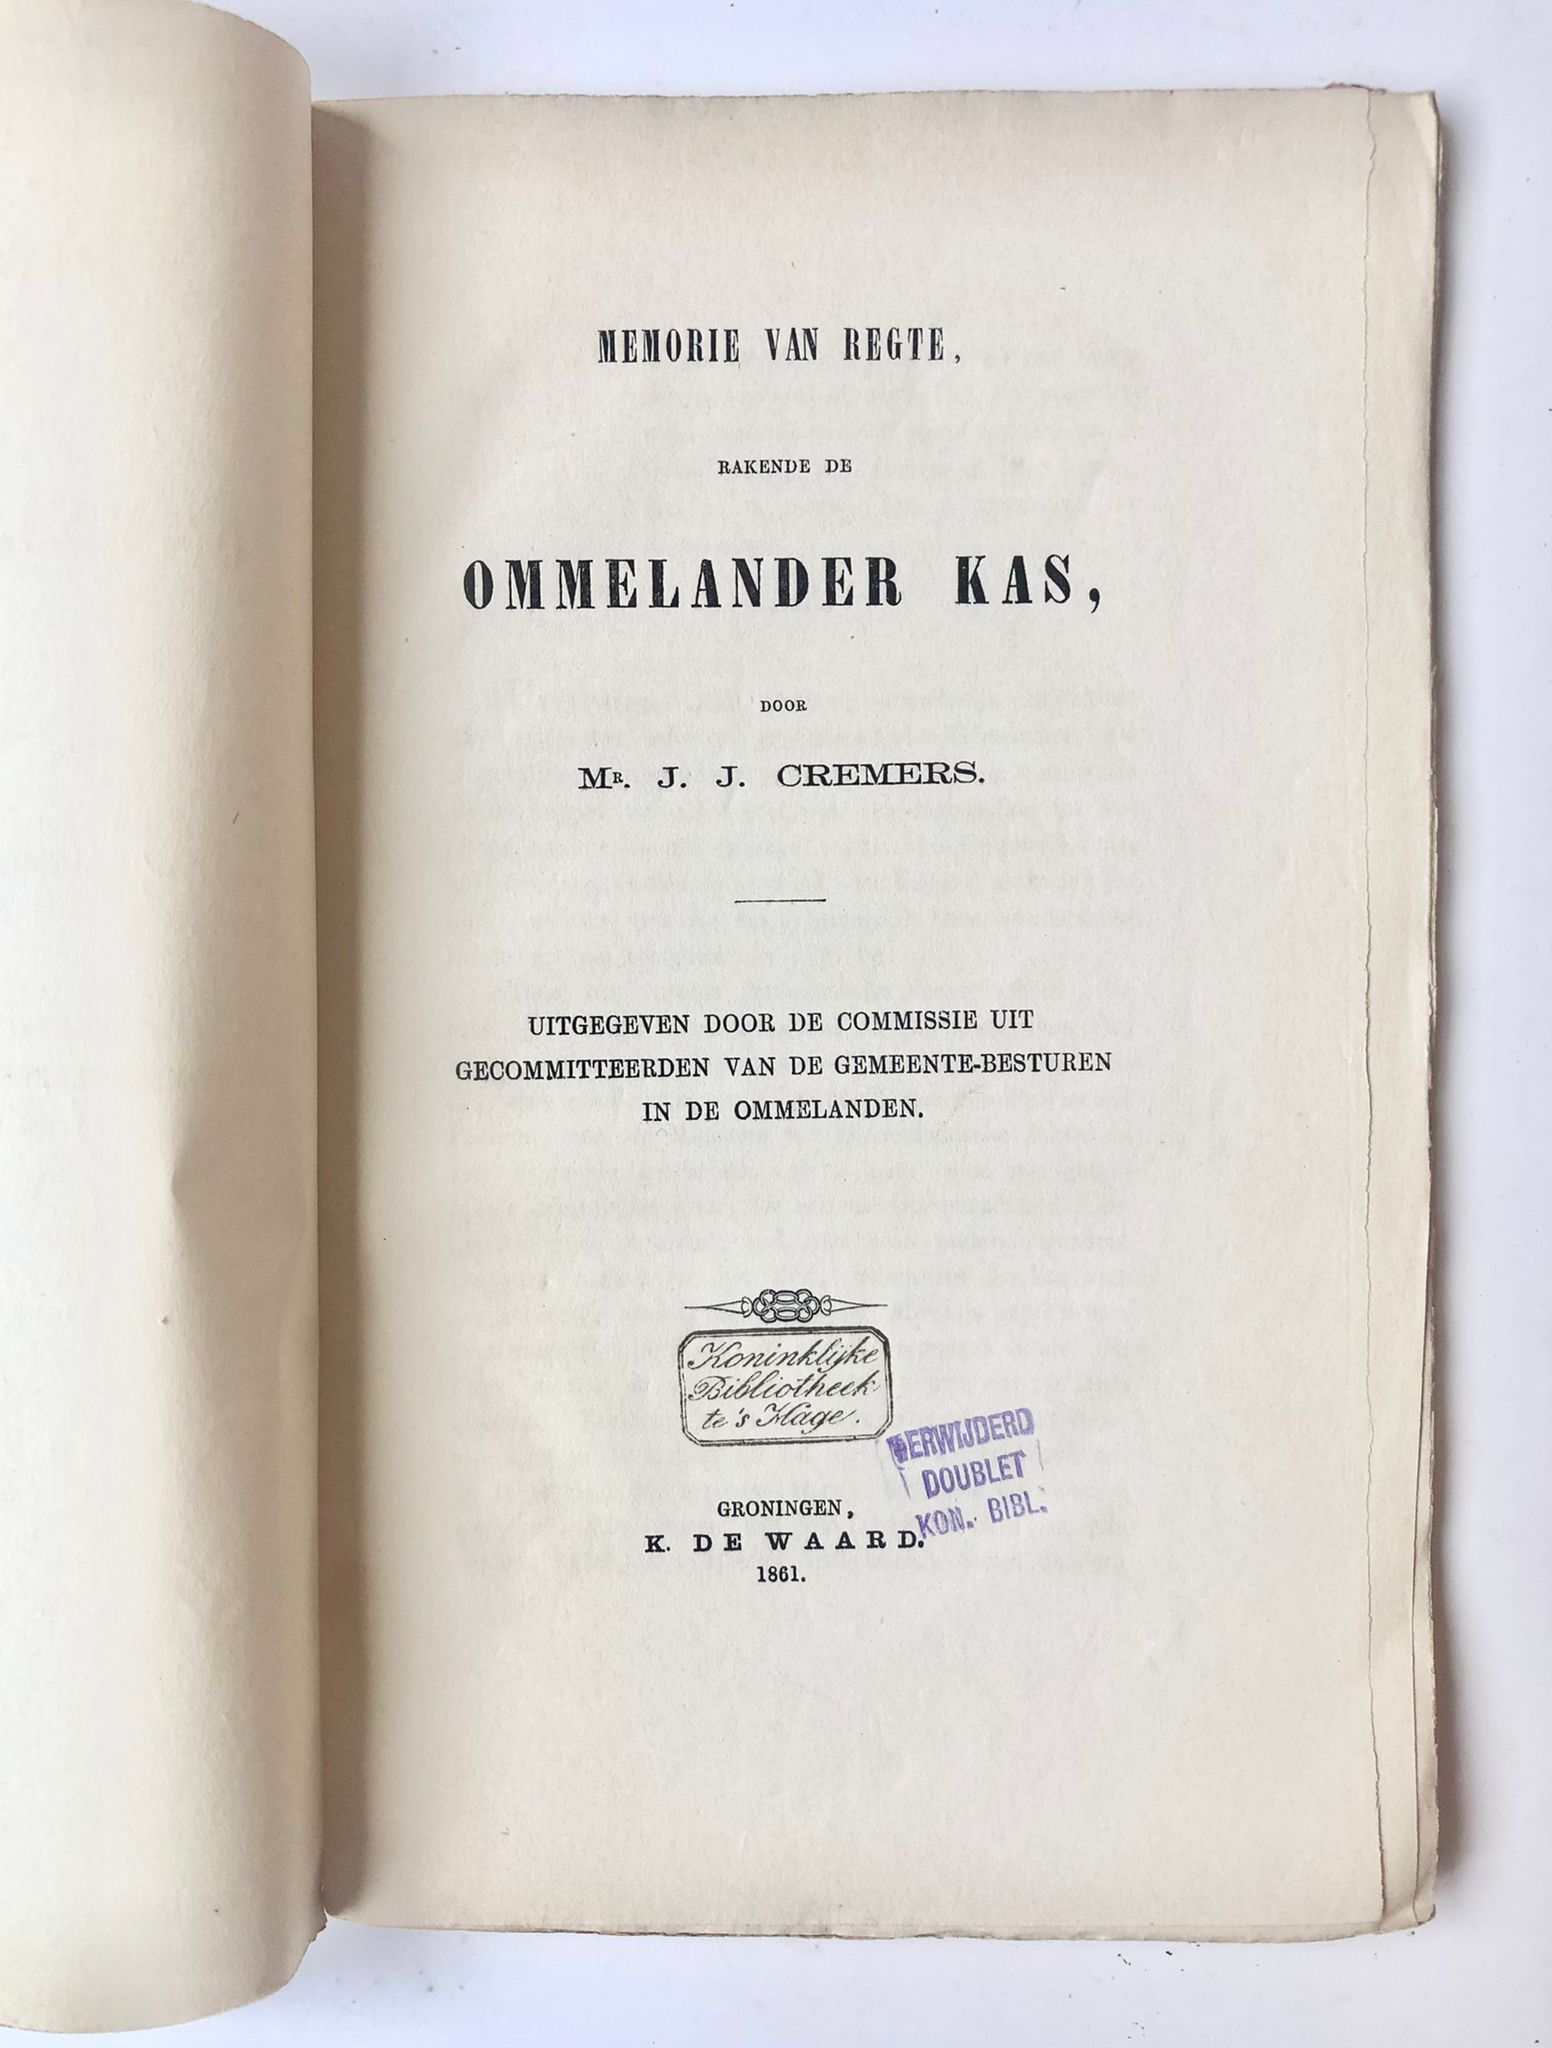 [Groningen, 1861] Memorie van Regte, rakende de Ommelander Kas, K. de Waard, Groningen, 1861, 83 pp.